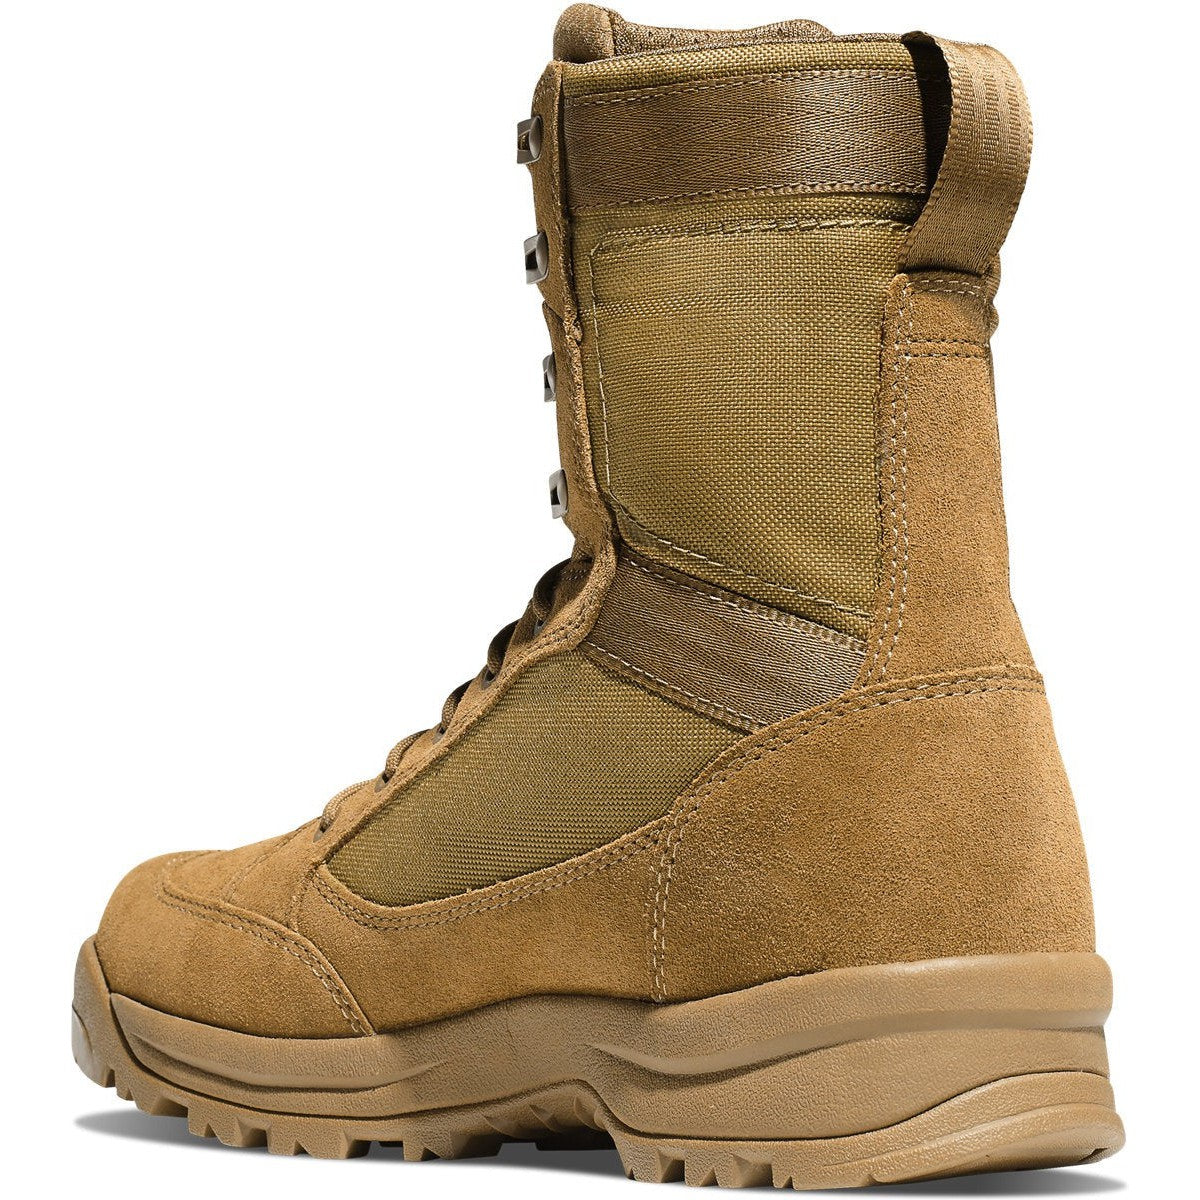 Danner Men's Tanicus 8" Waterproof Military Work Boot -Coyote- 55317  - Overlook Boots